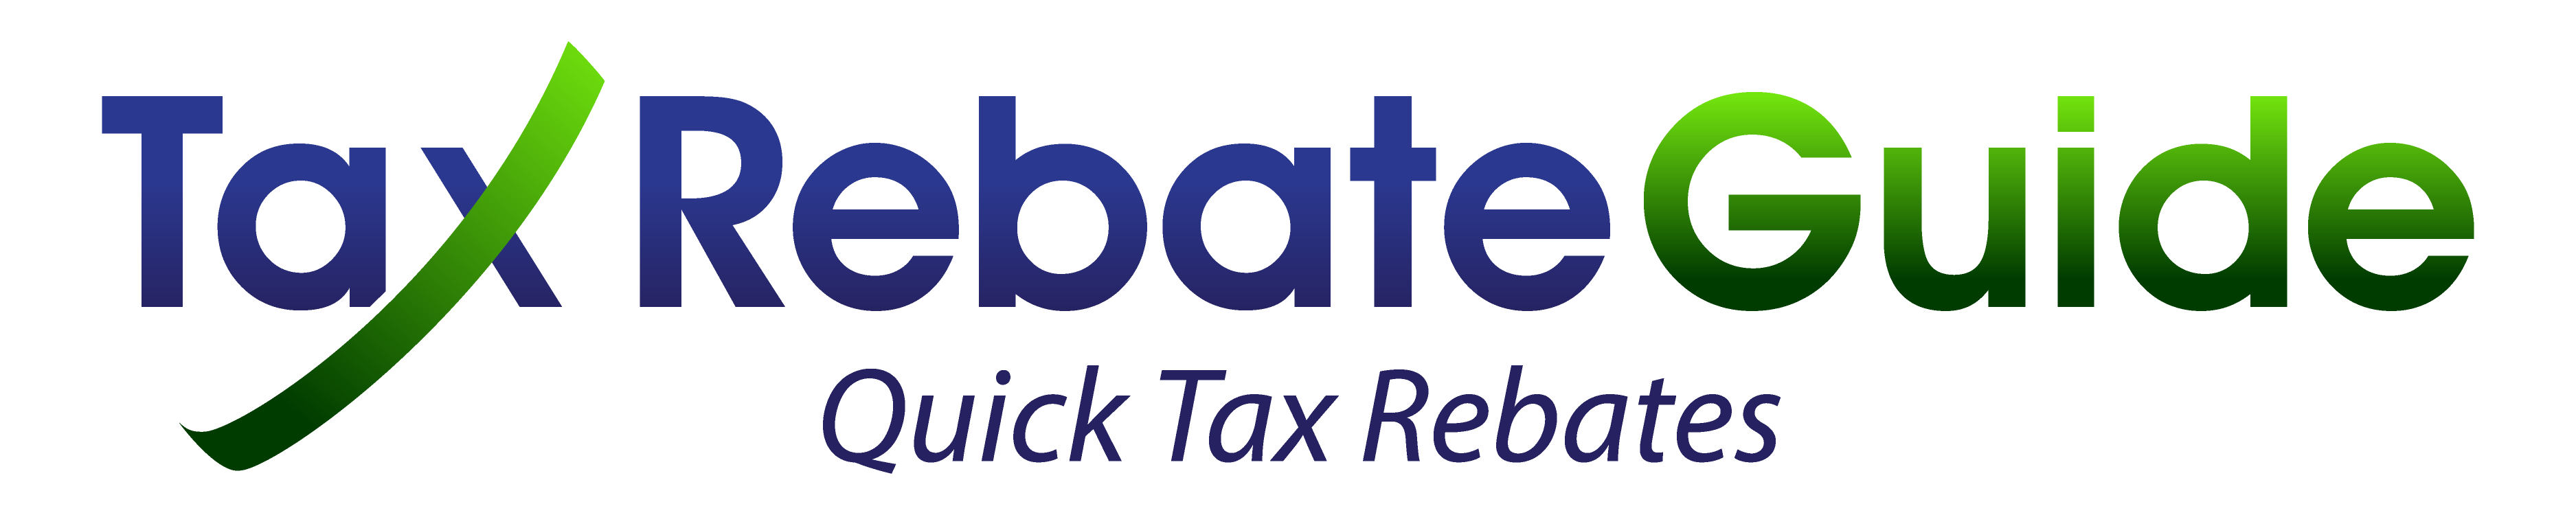 uniform-tax-rebate